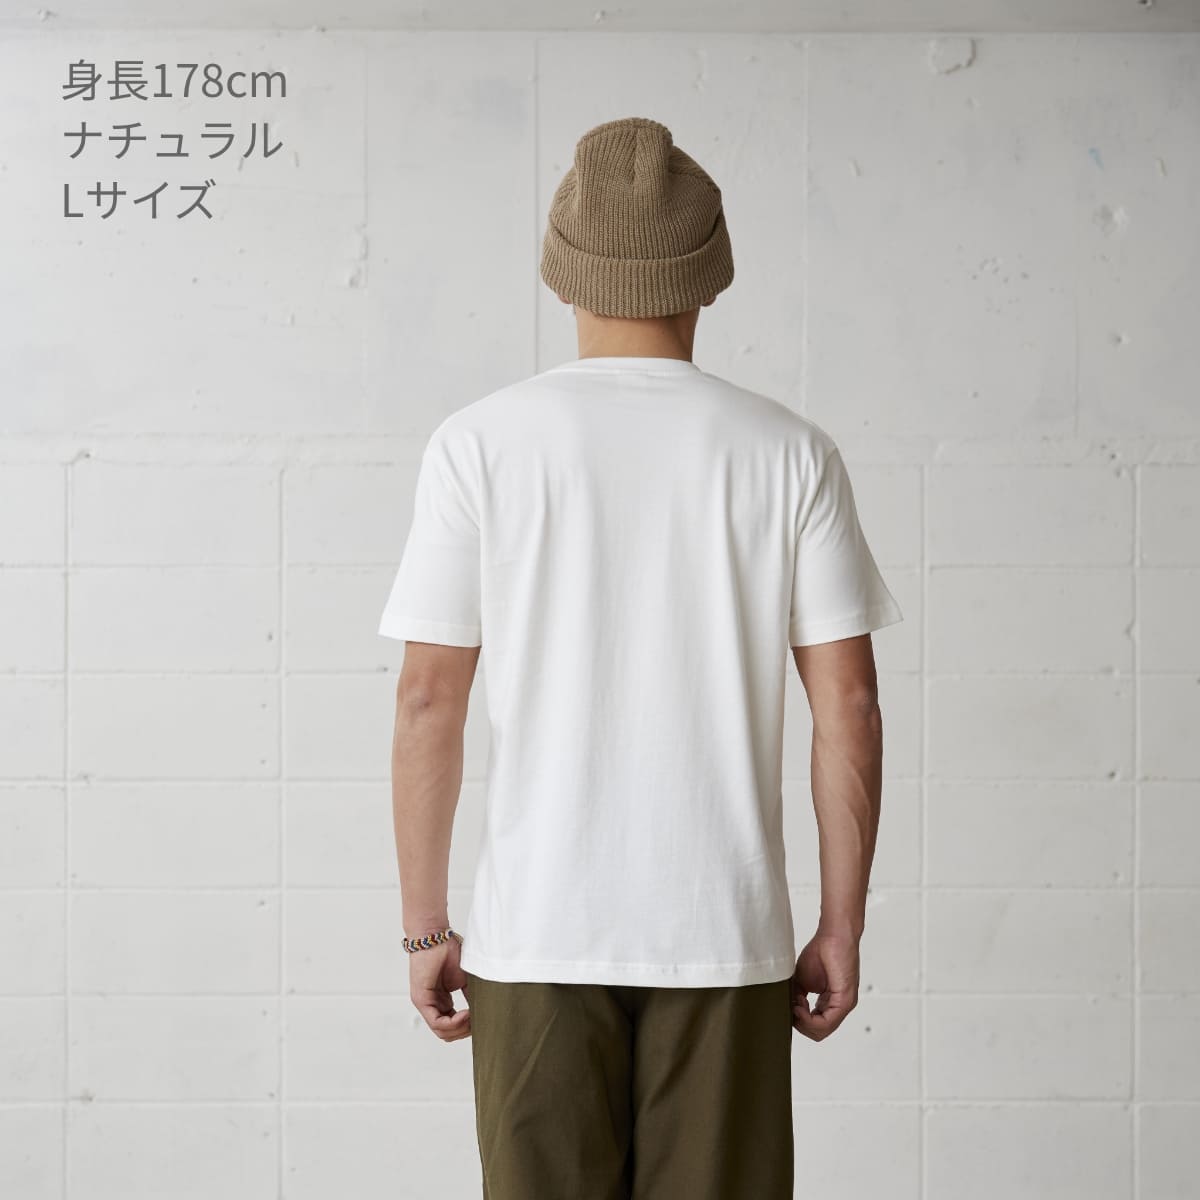 オーガニックコットンTシャツ | ビッグサイズ | 1枚 | OGB-910 | ミルキーグレー